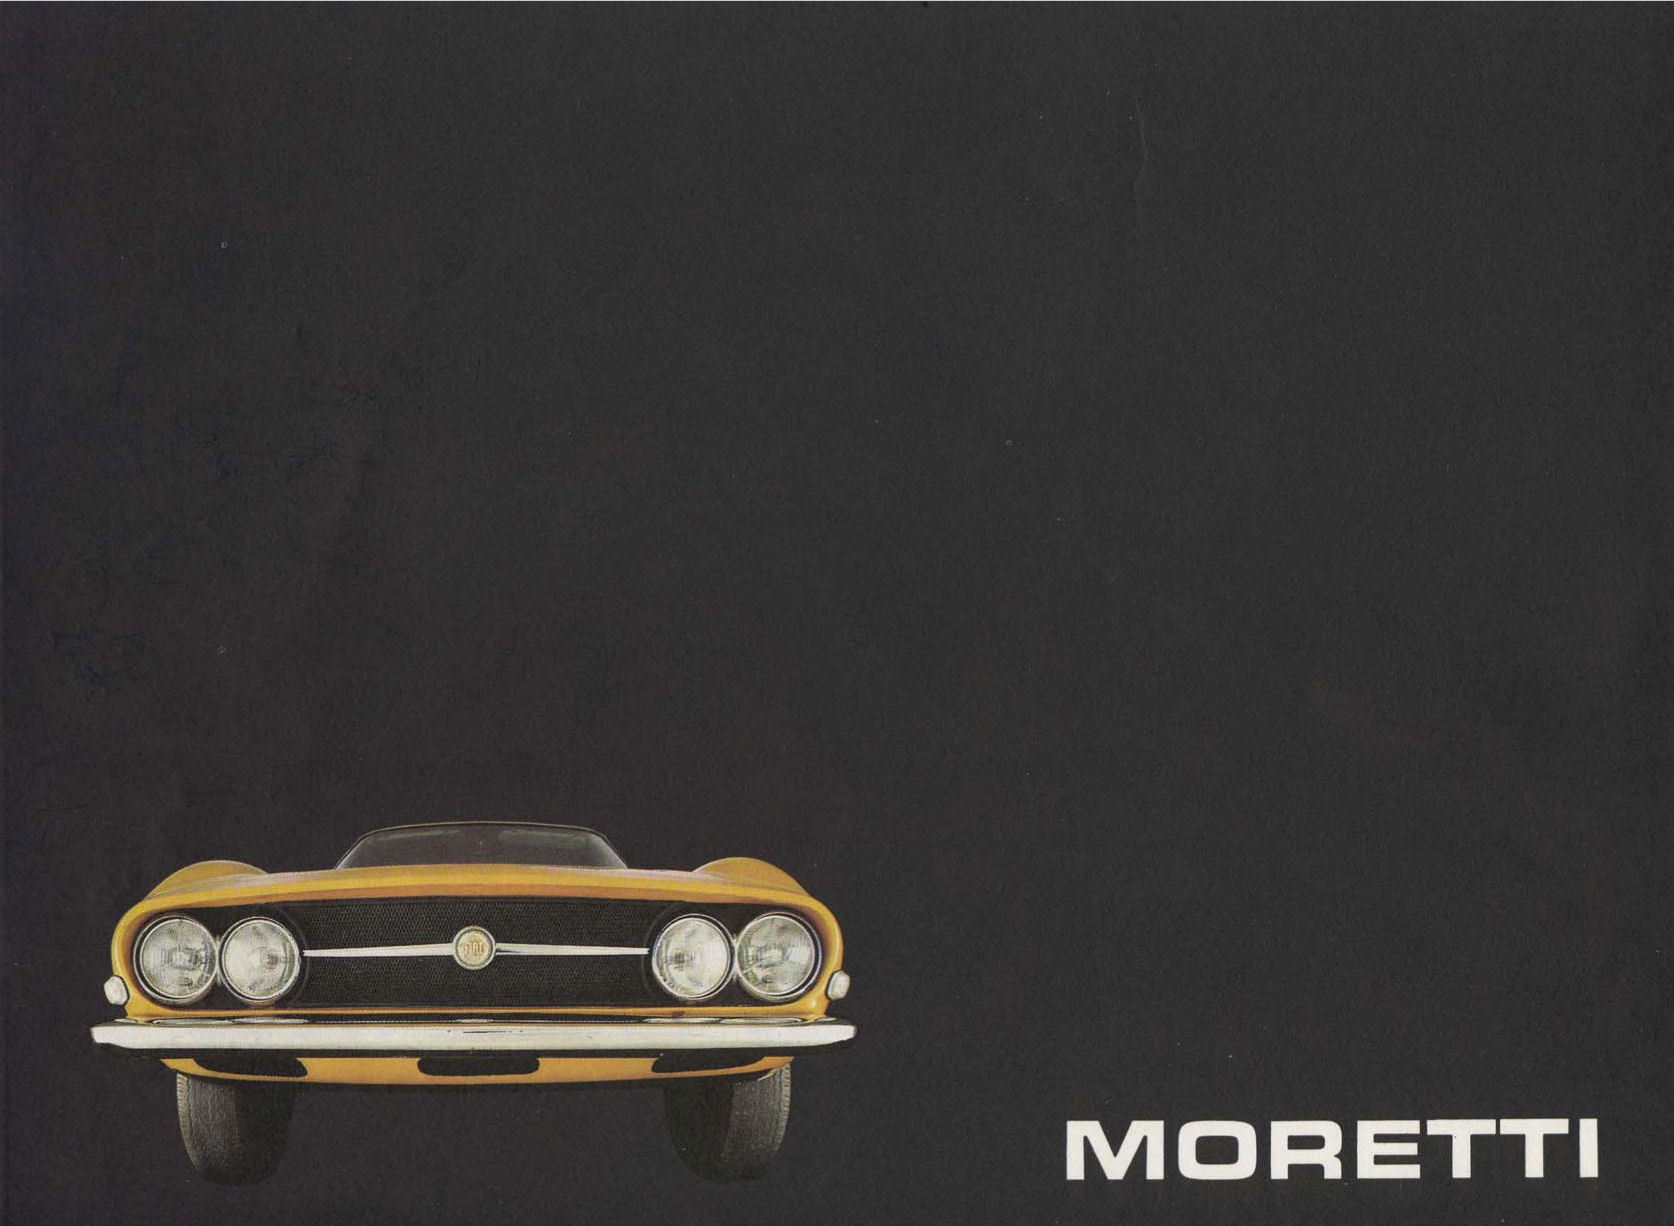 1967 Moretti Fiat 124 brochure